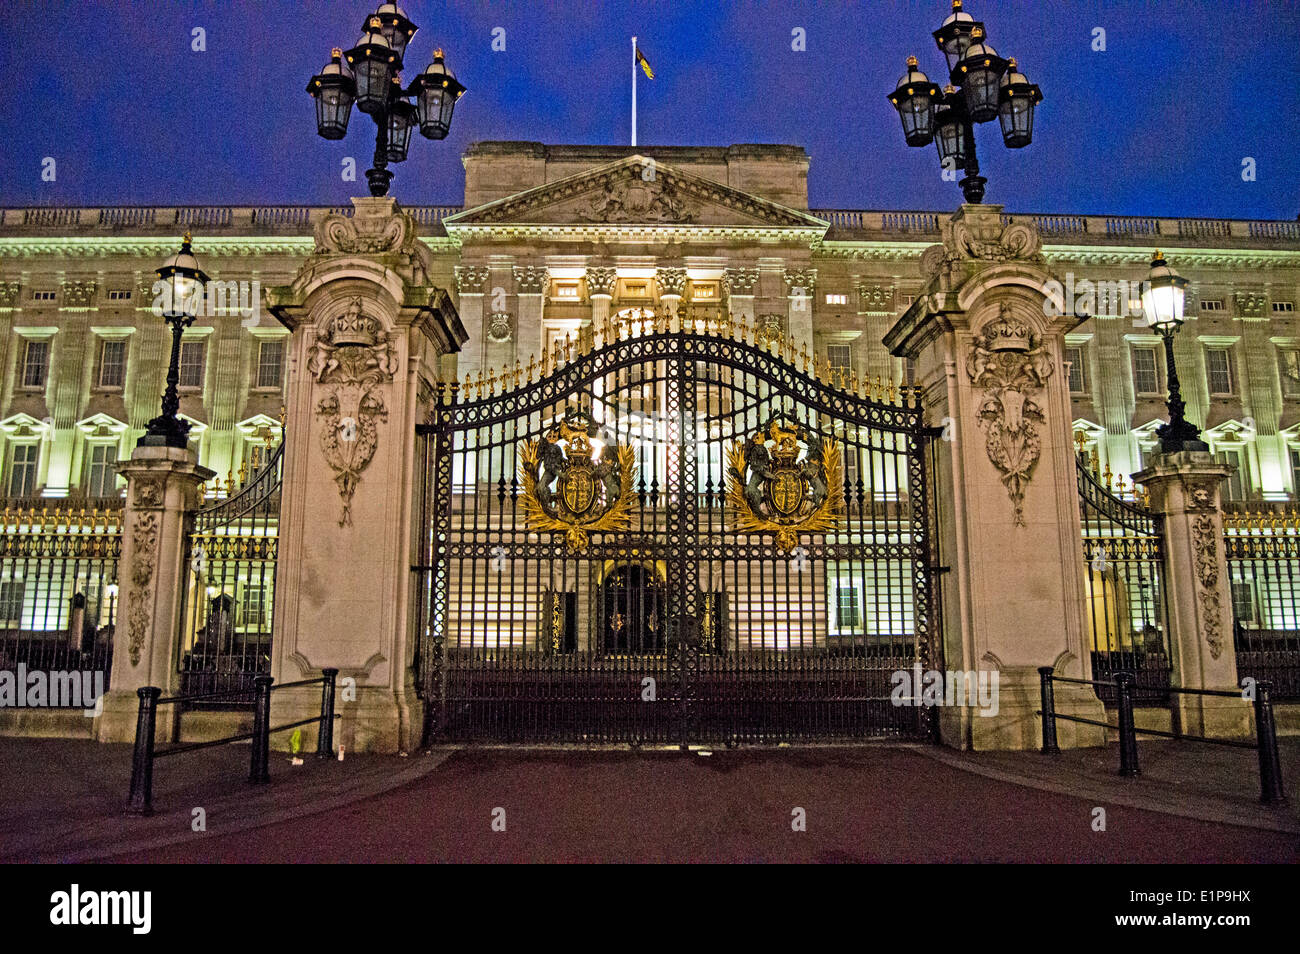 The Buckingham Palace gates at night, City of Westminster, London, England, United Kingdom Stock Photo